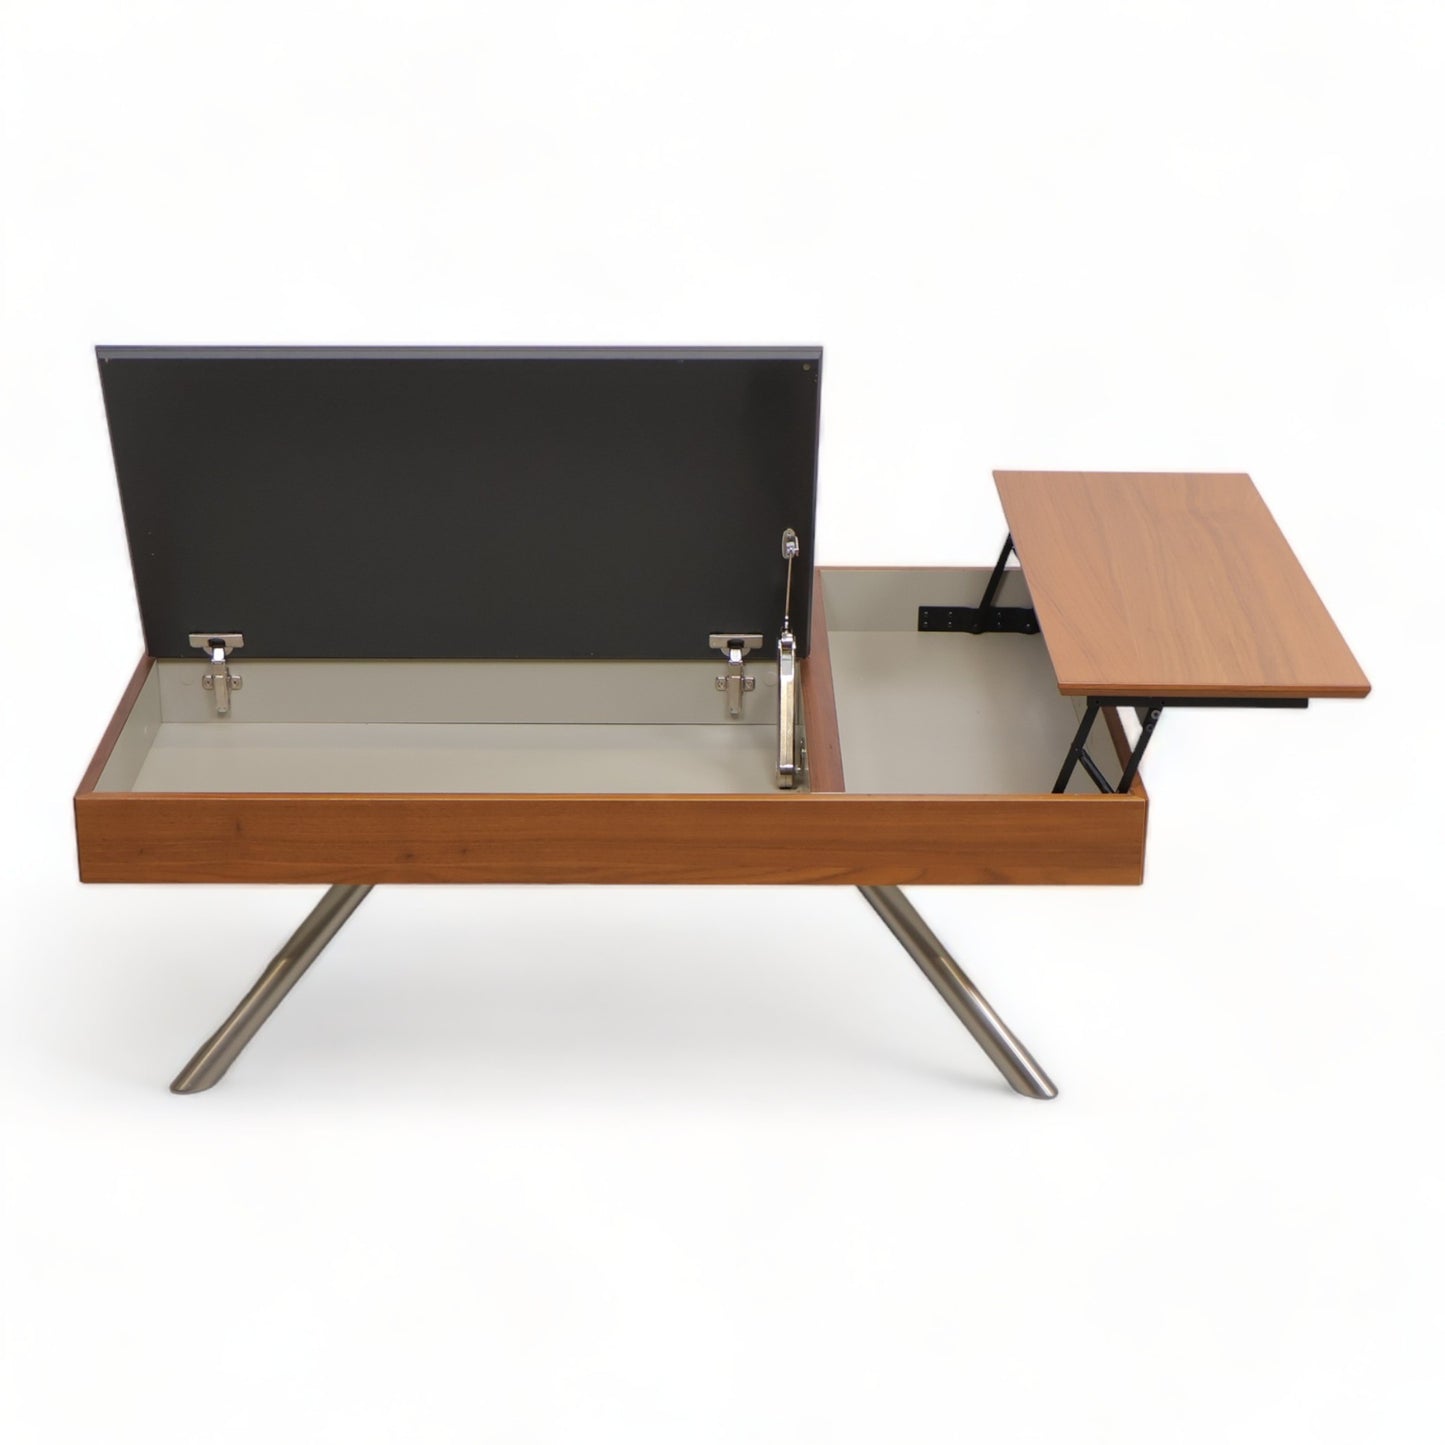 BoConcept | Chiva funksjonelt sofabord med oppbevaringsplass